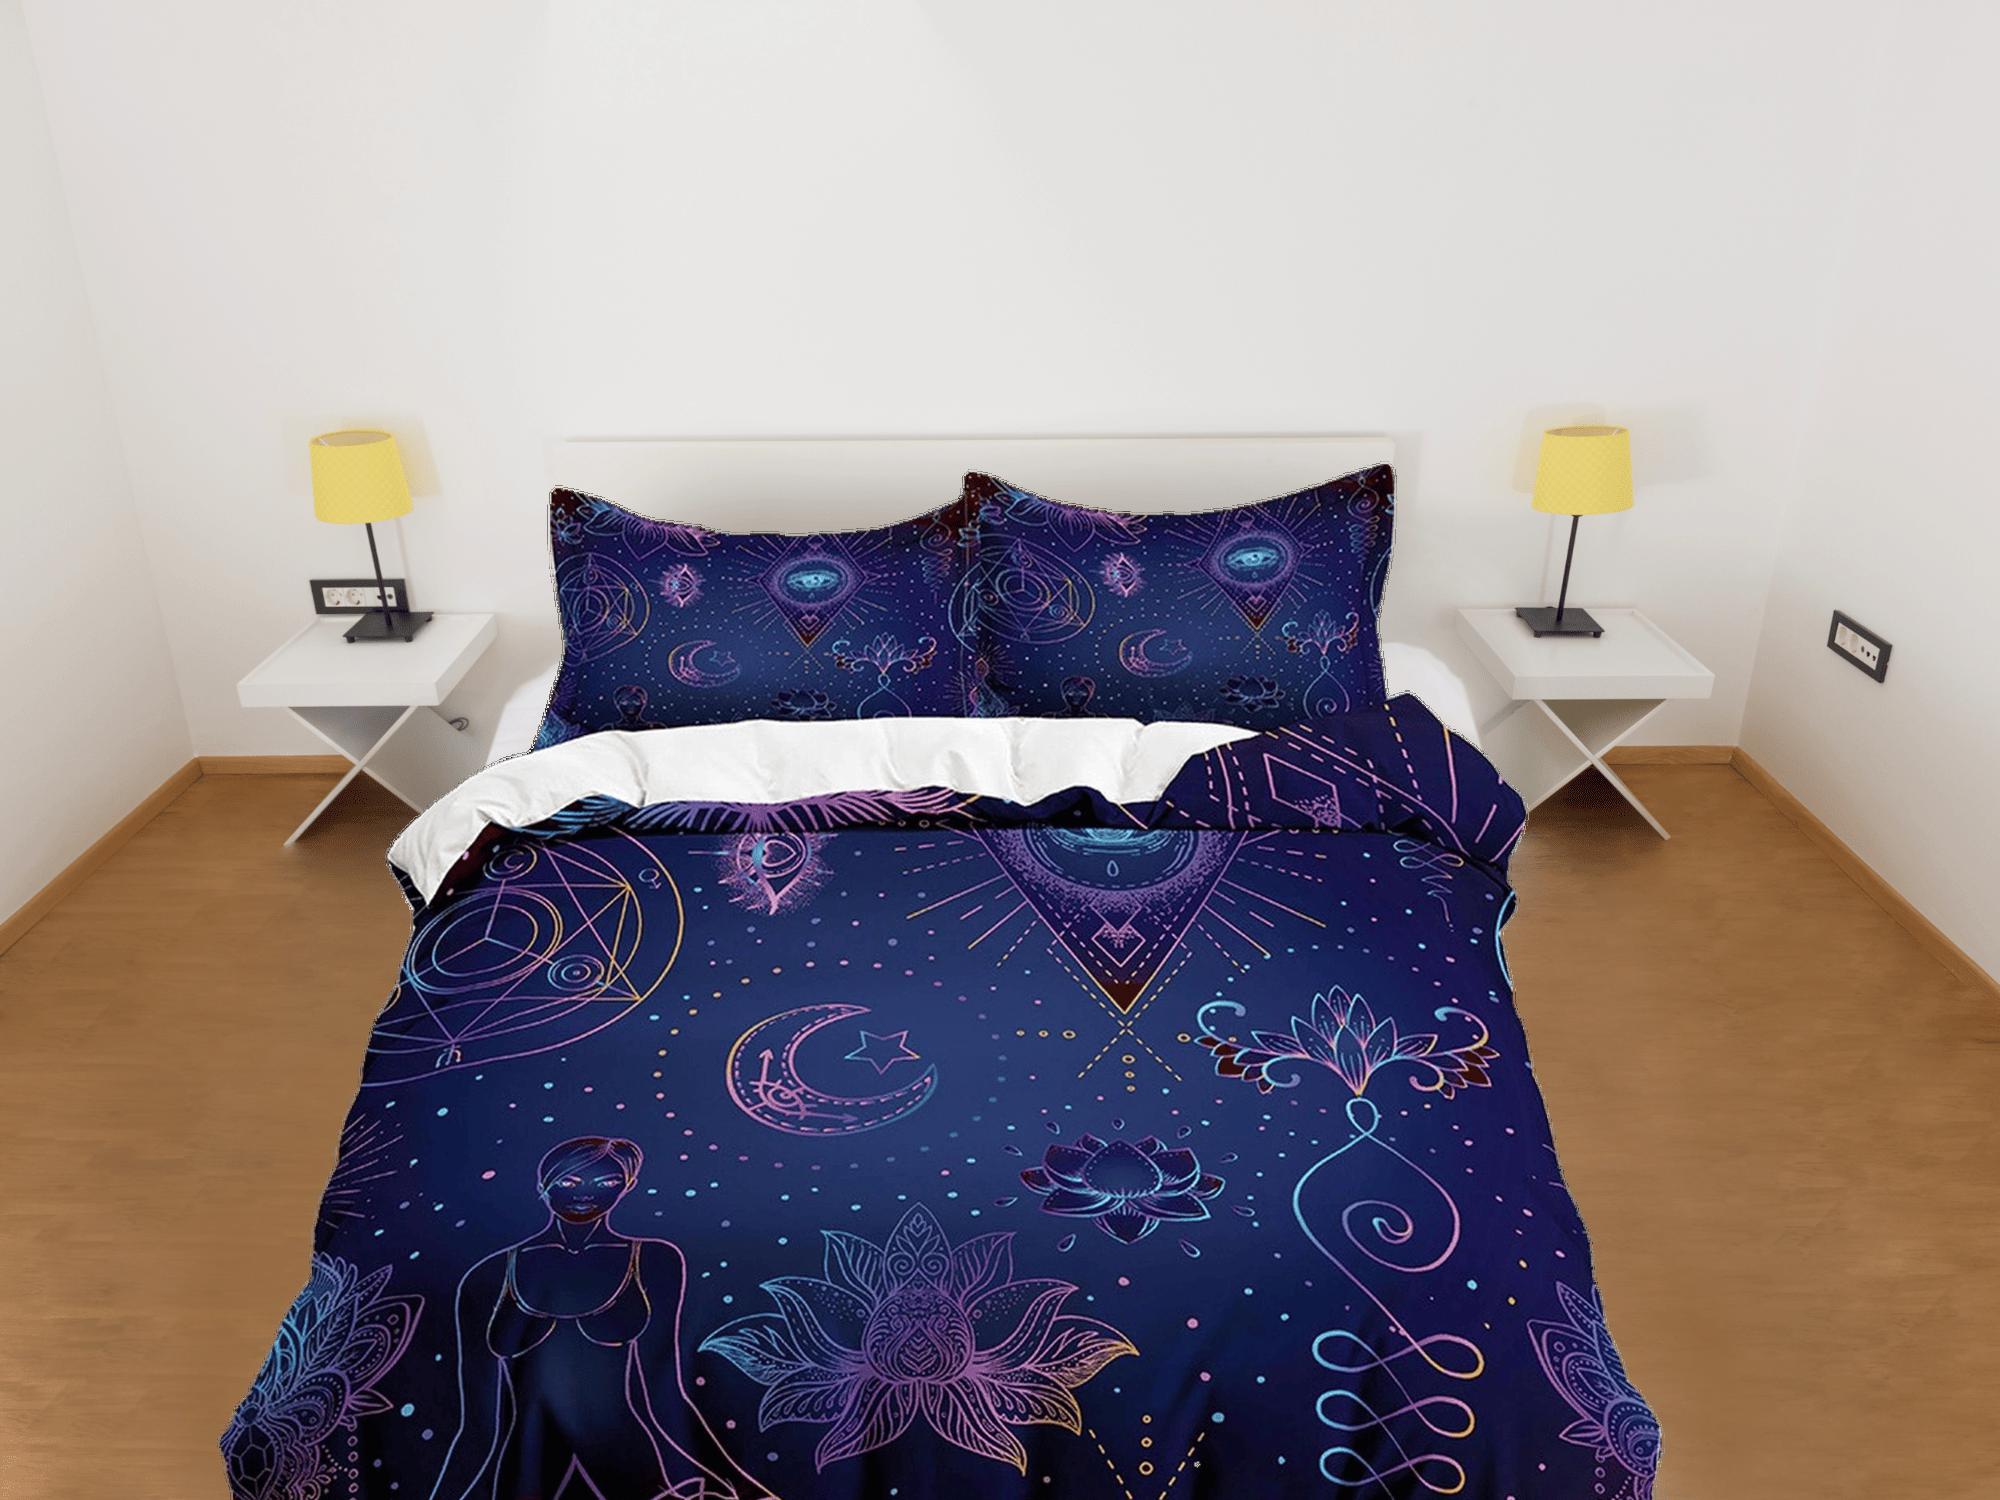 daintyduvet Celestial bedding blue, zen chic, witchy decor, dorm bedding, aesthetic duvet, boho bedding set full king queen, astrology gifts, gothic art